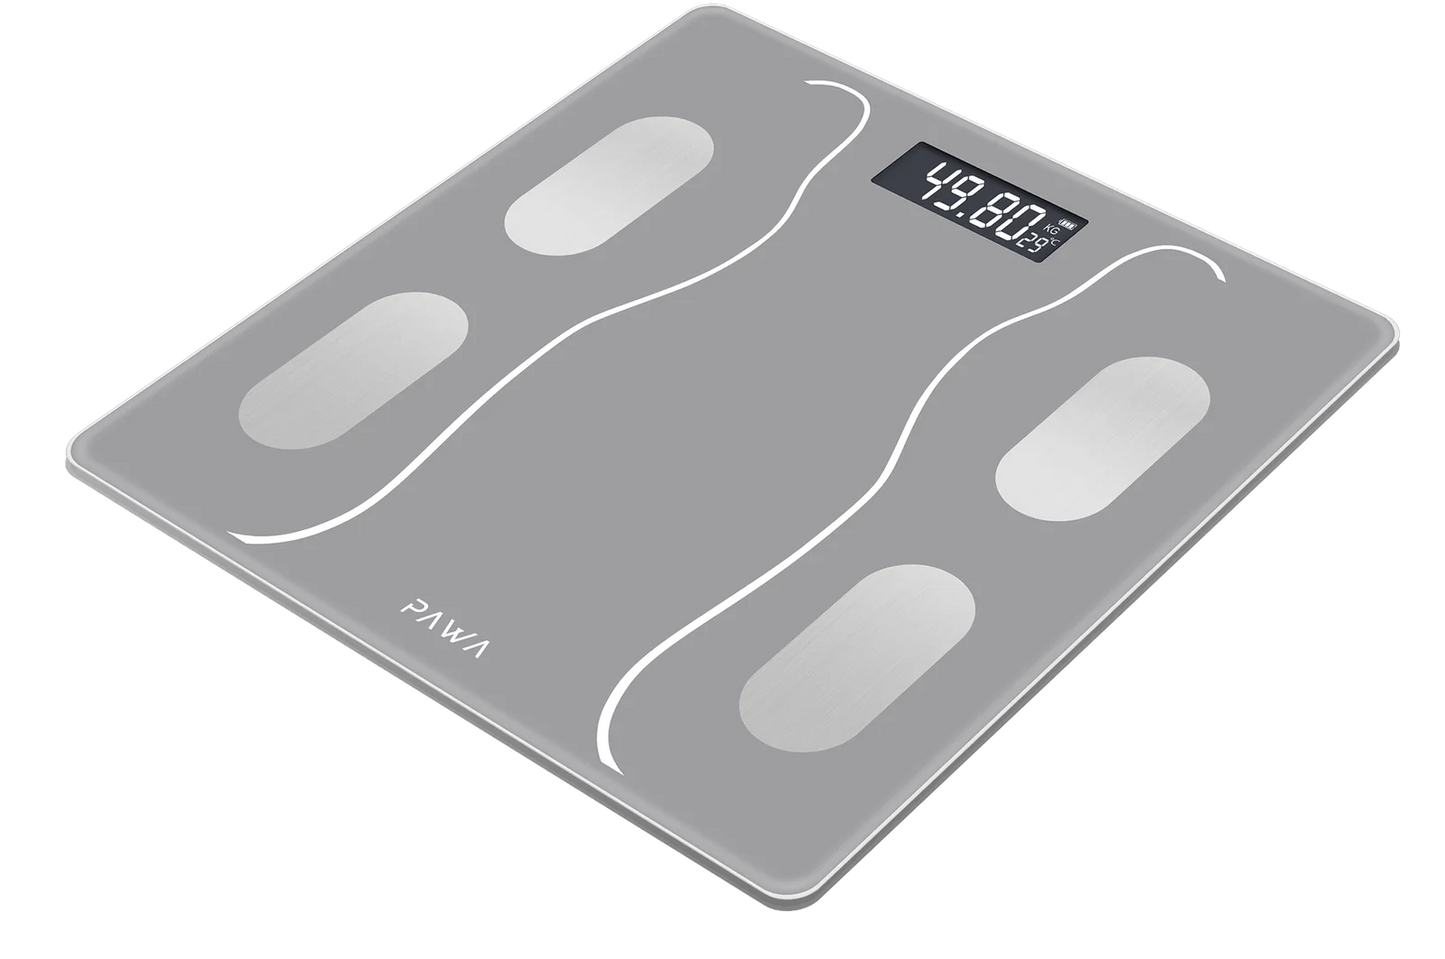 Pawa Smart Body Scale with Body Analysis App - Grey